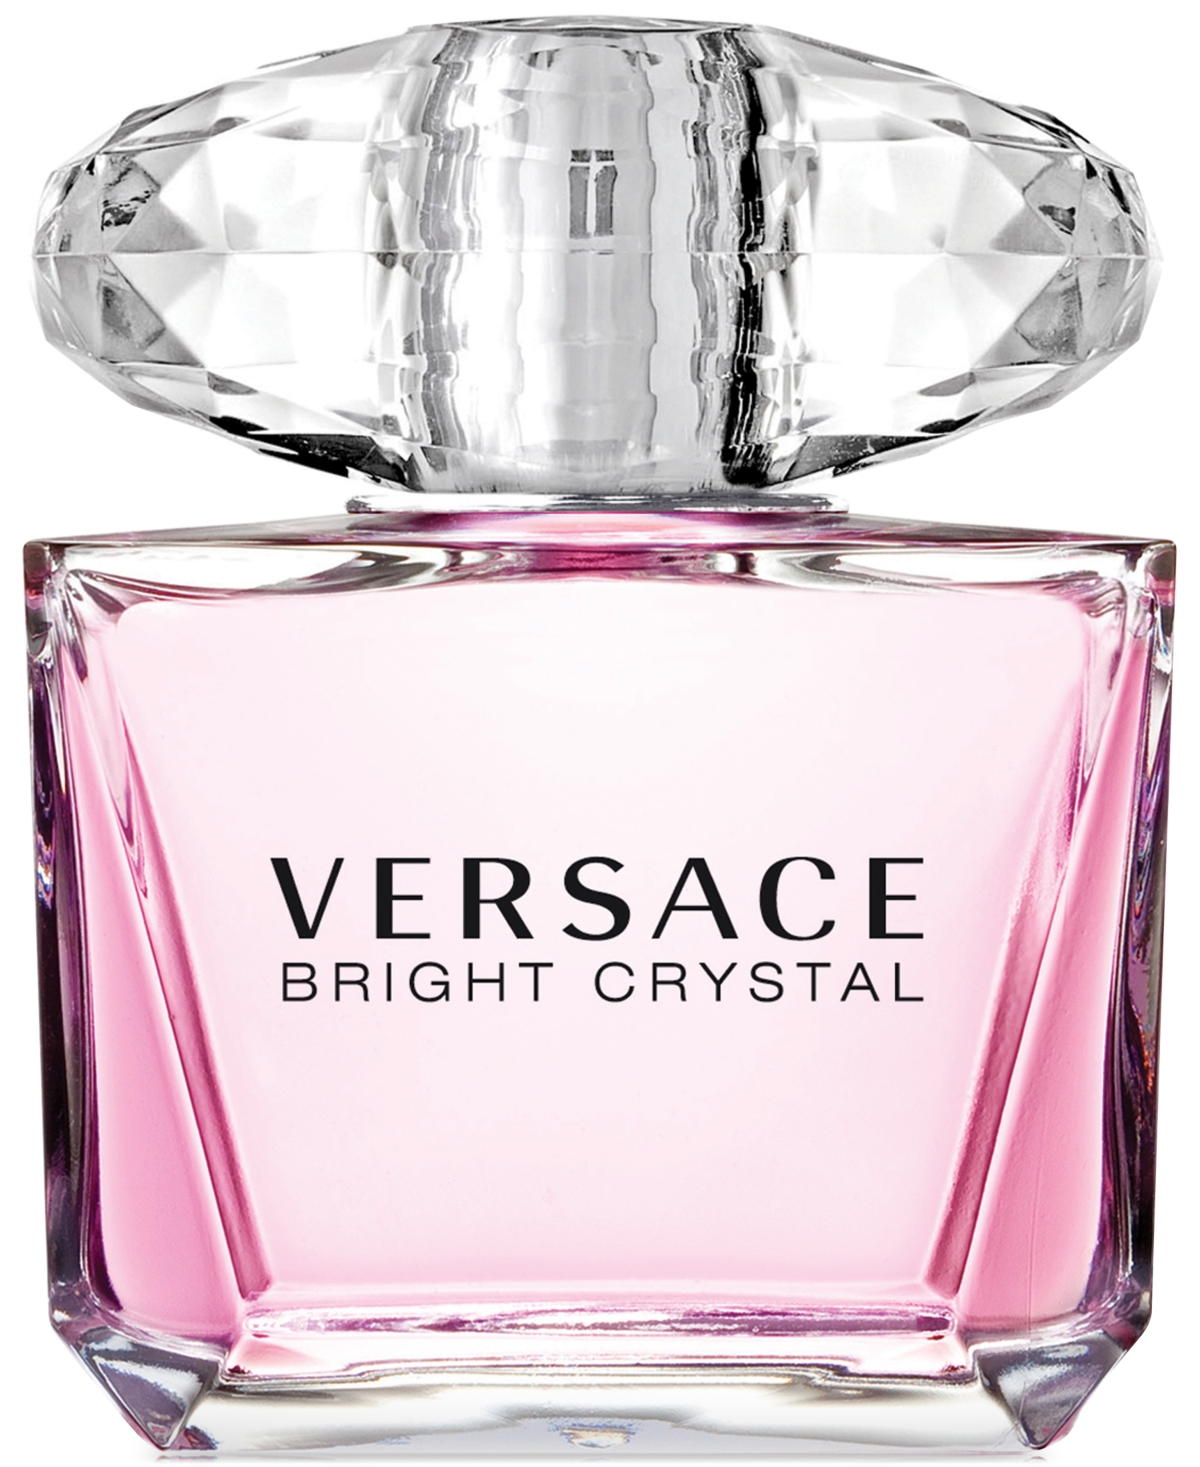 Versace Bright Crystal Eau de Toilette Spray, 6.7 oz